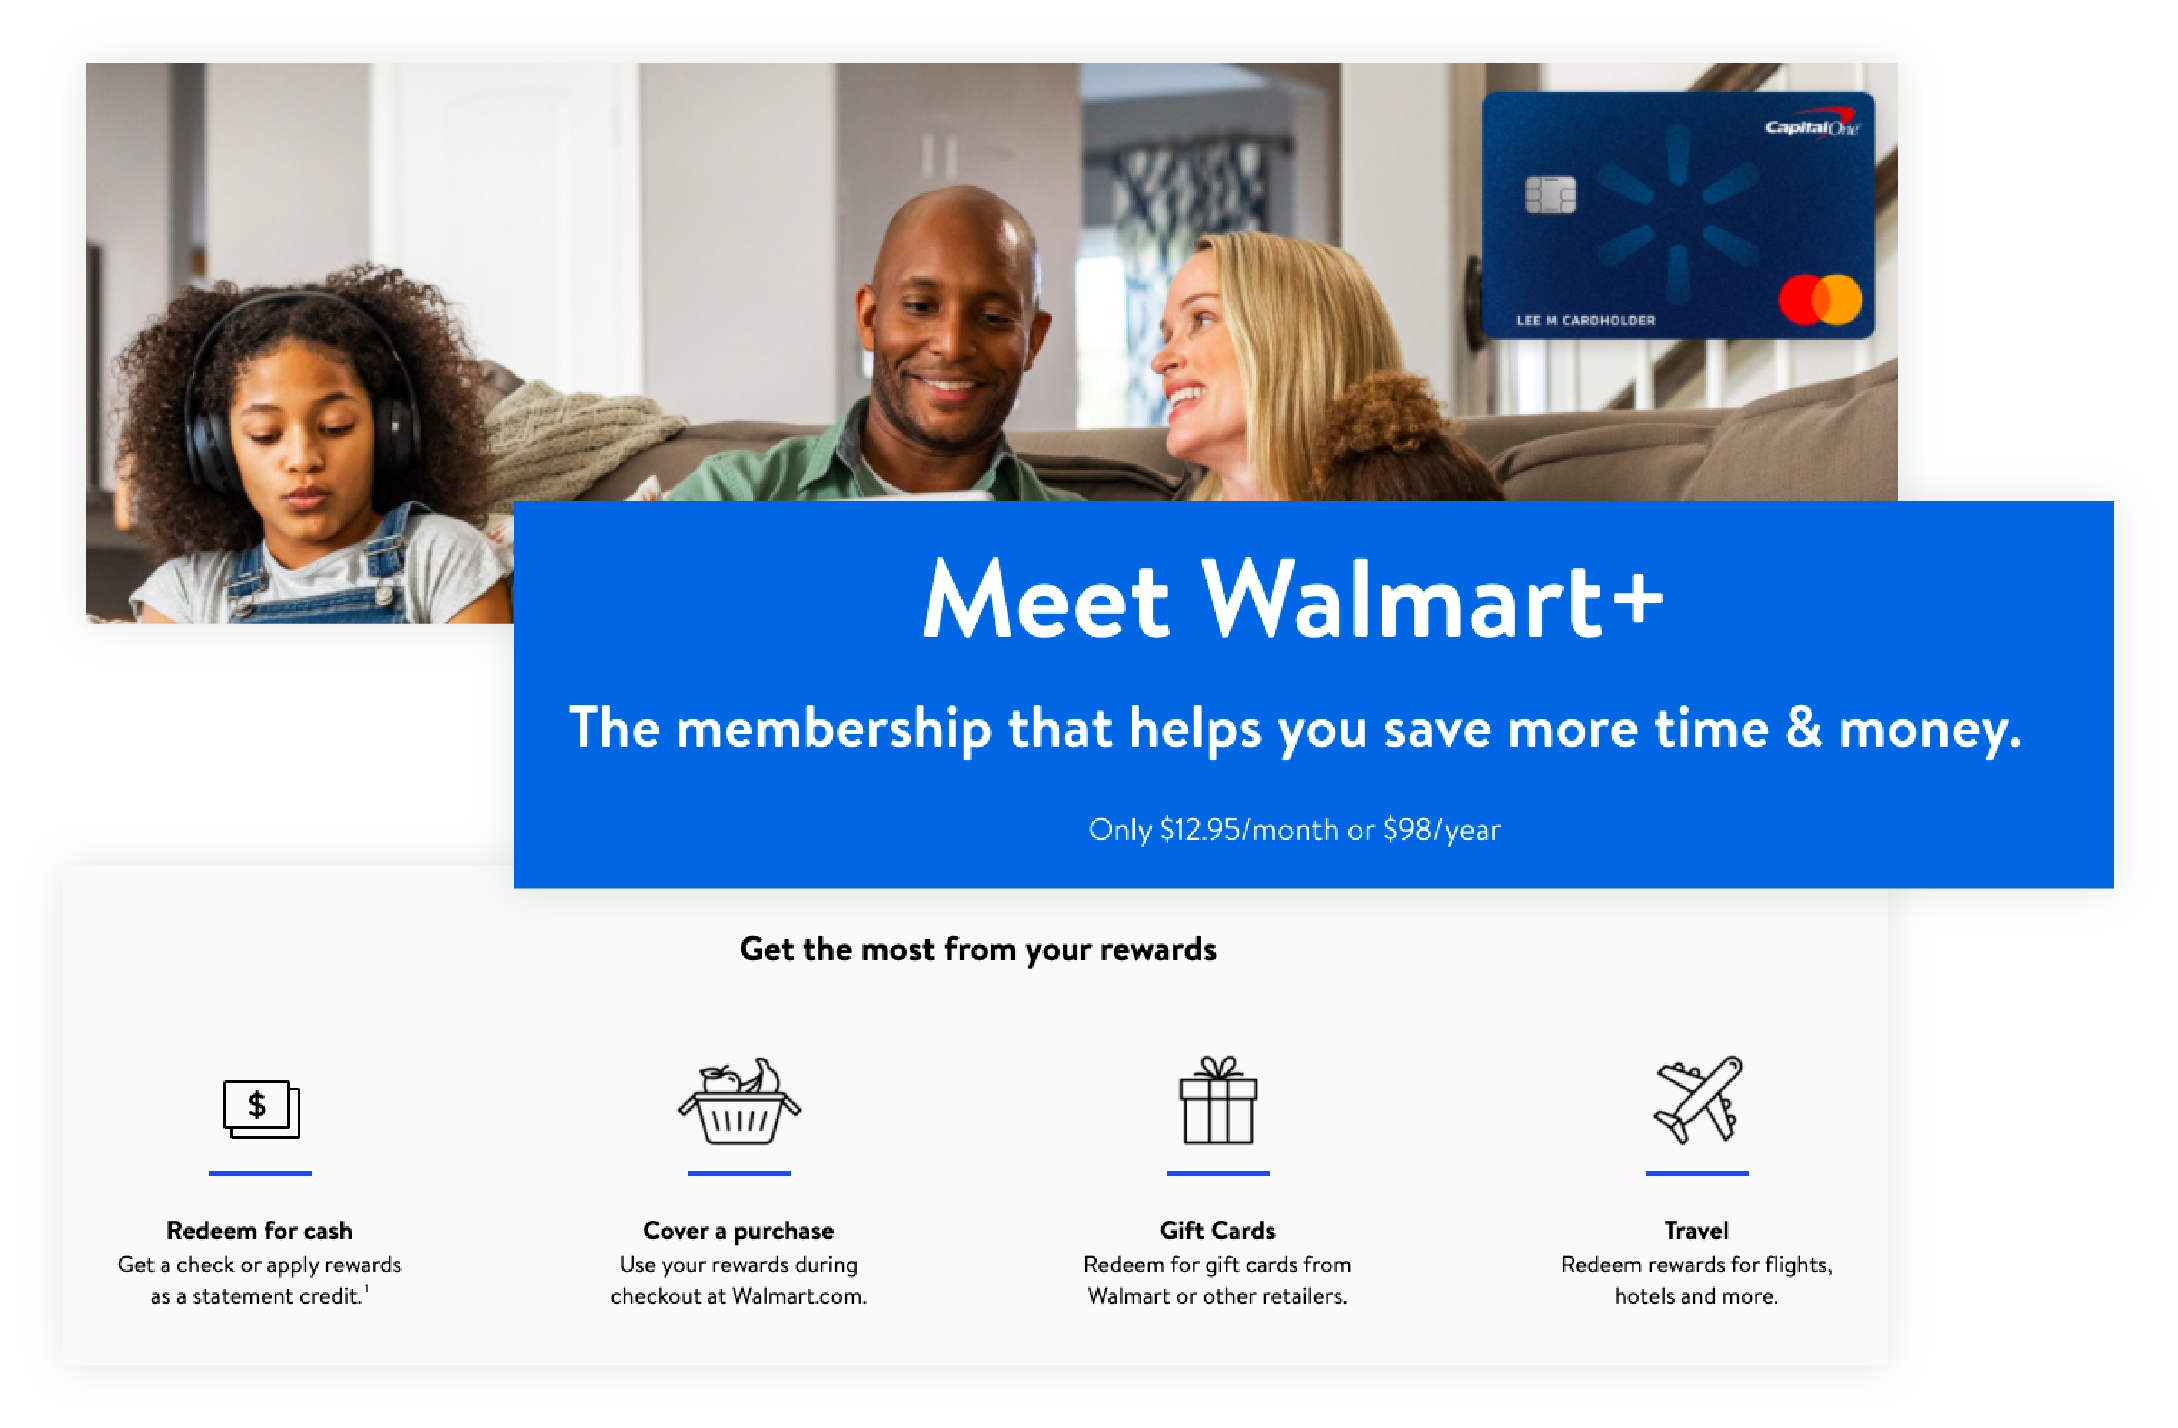 Überblick über die Vorteile für Mitglieder des Walmart+-Prämienprogramms